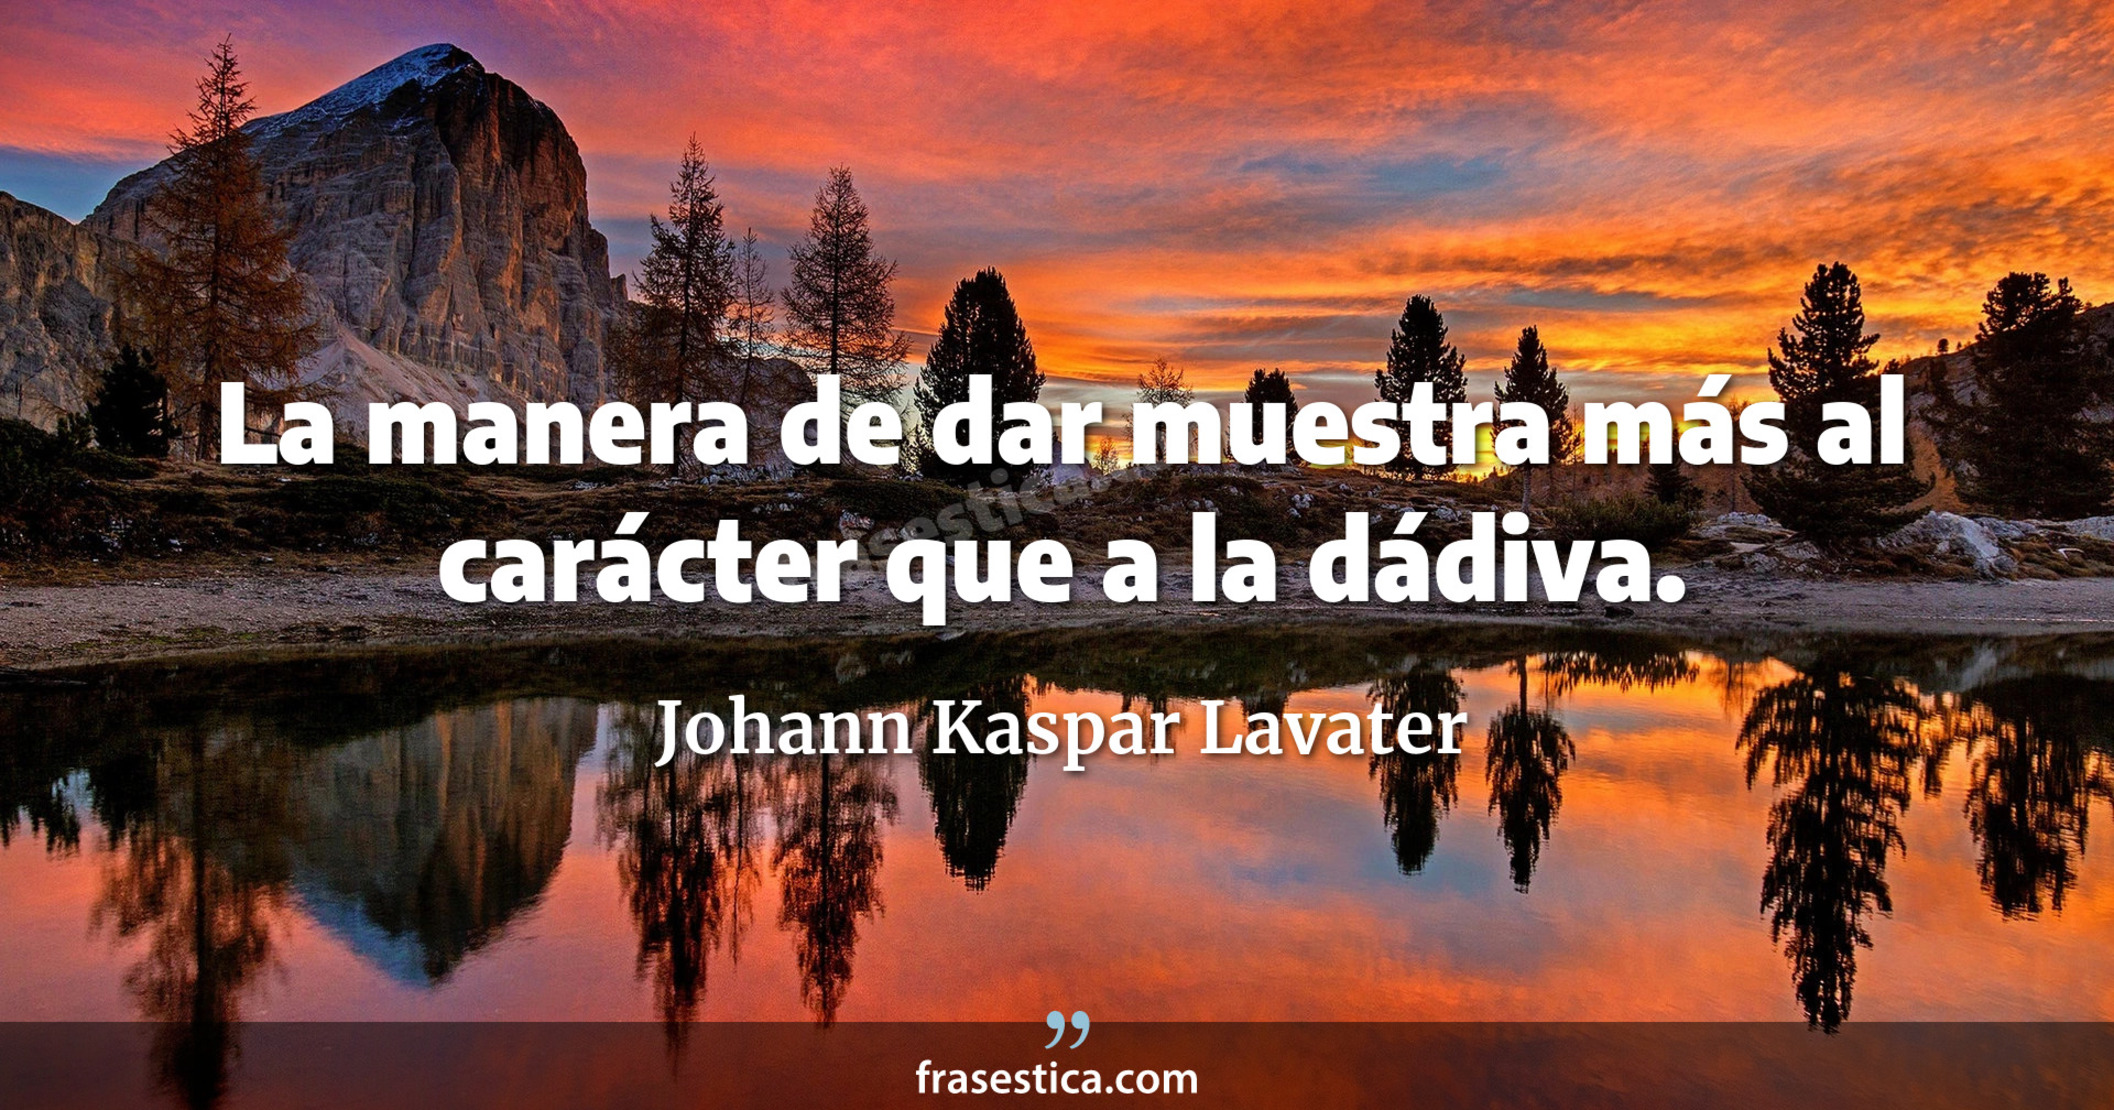 La manera de dar muestra más al carácter que a la dádiva. - Johann Kaspar Lavater